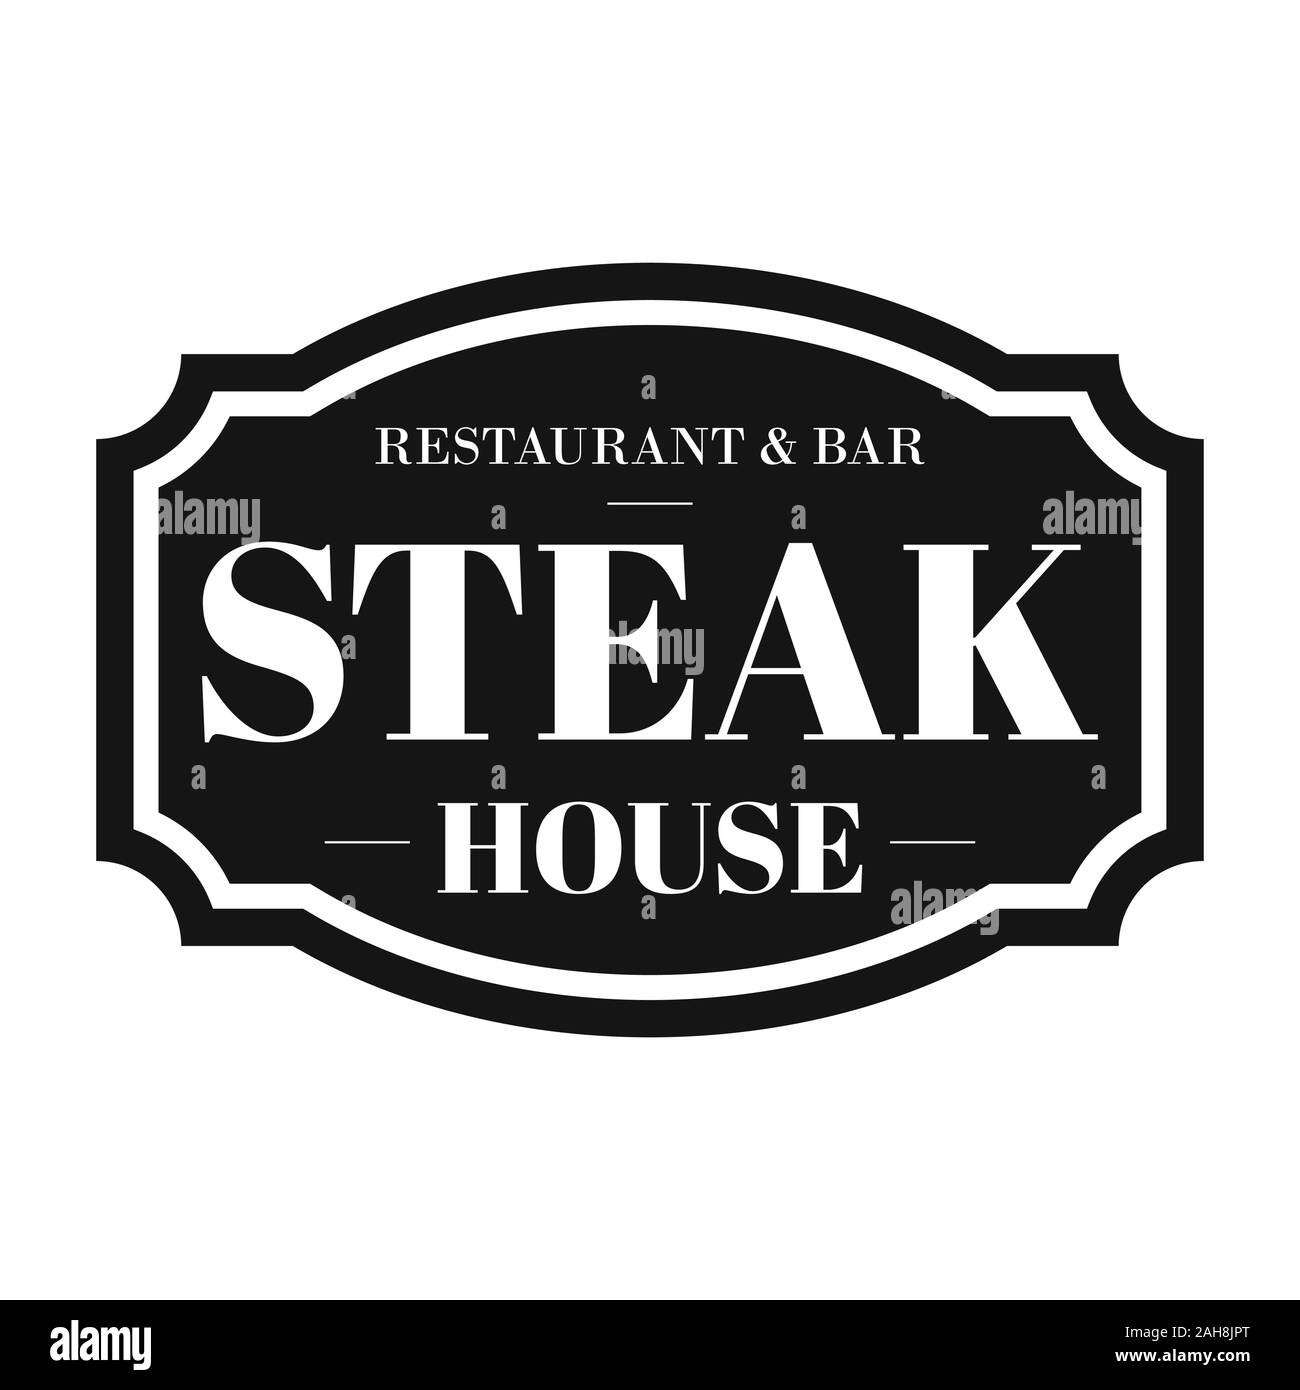 Steak House Restaurant vintage sign Stock Vector